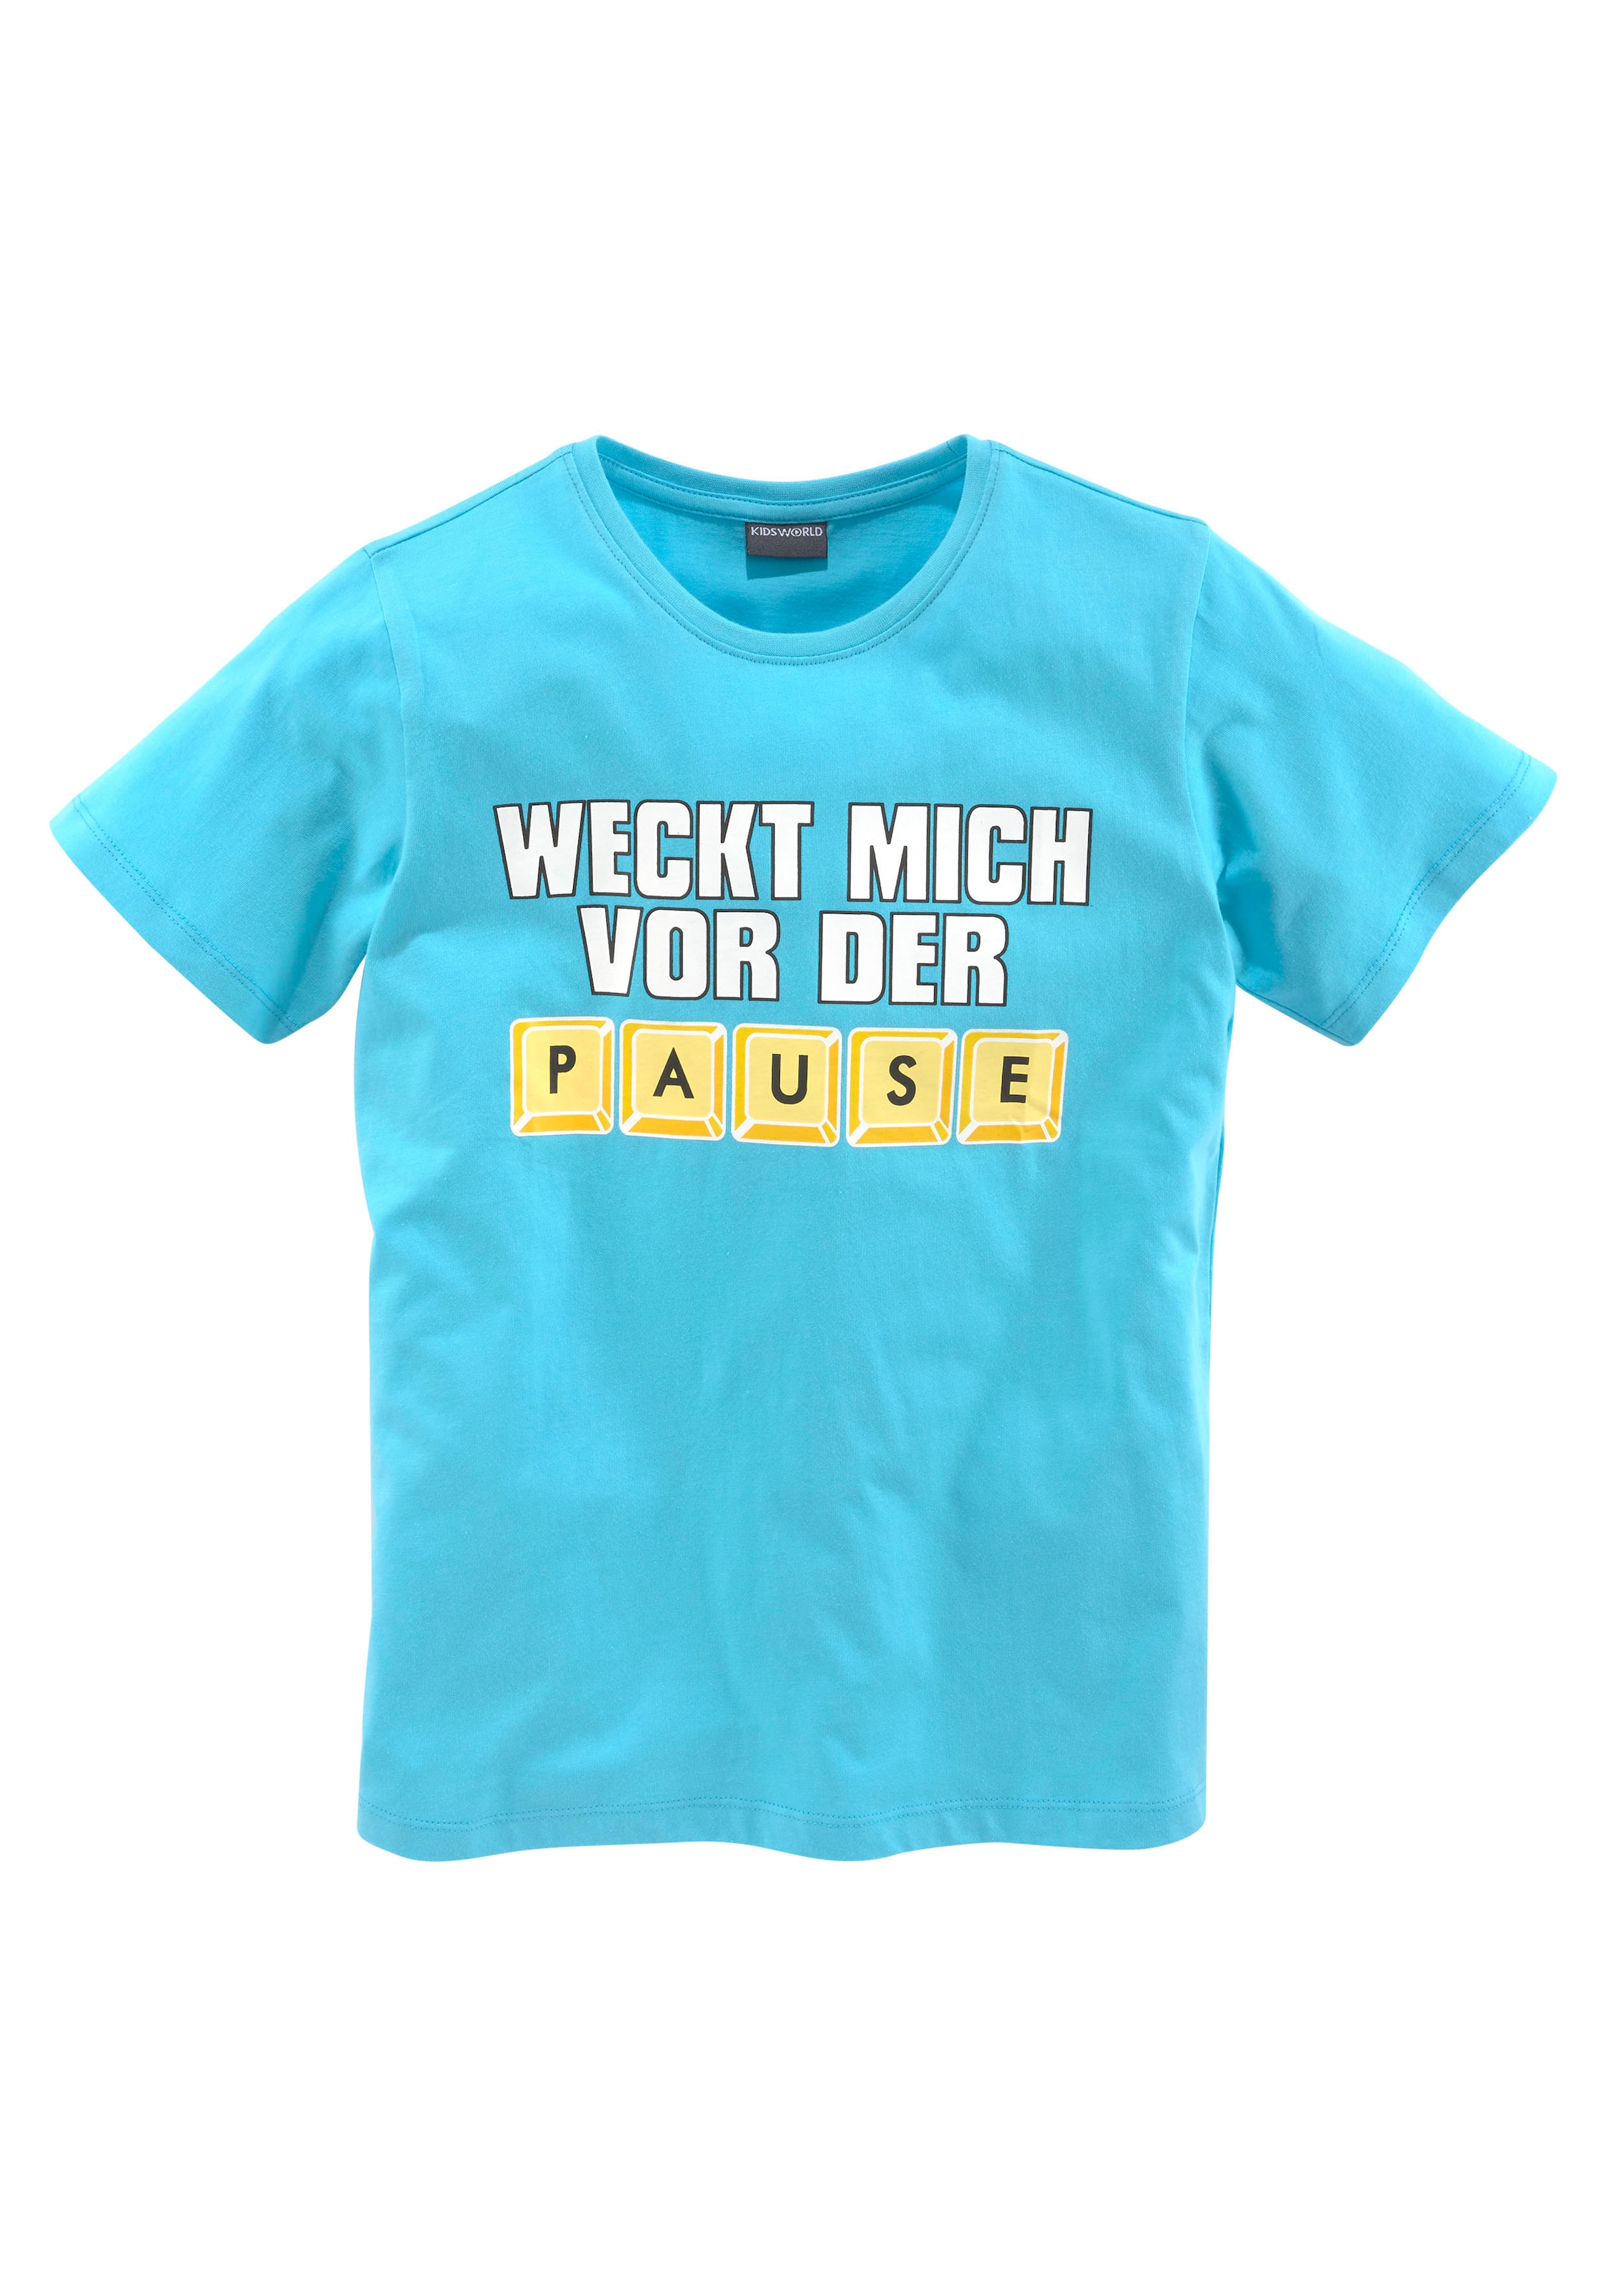 Trendige KIDSWORLD T-Shirt kaufen ohne MICH PAUSE«, DER »WECK VOR Spruch Mindestbestellwert